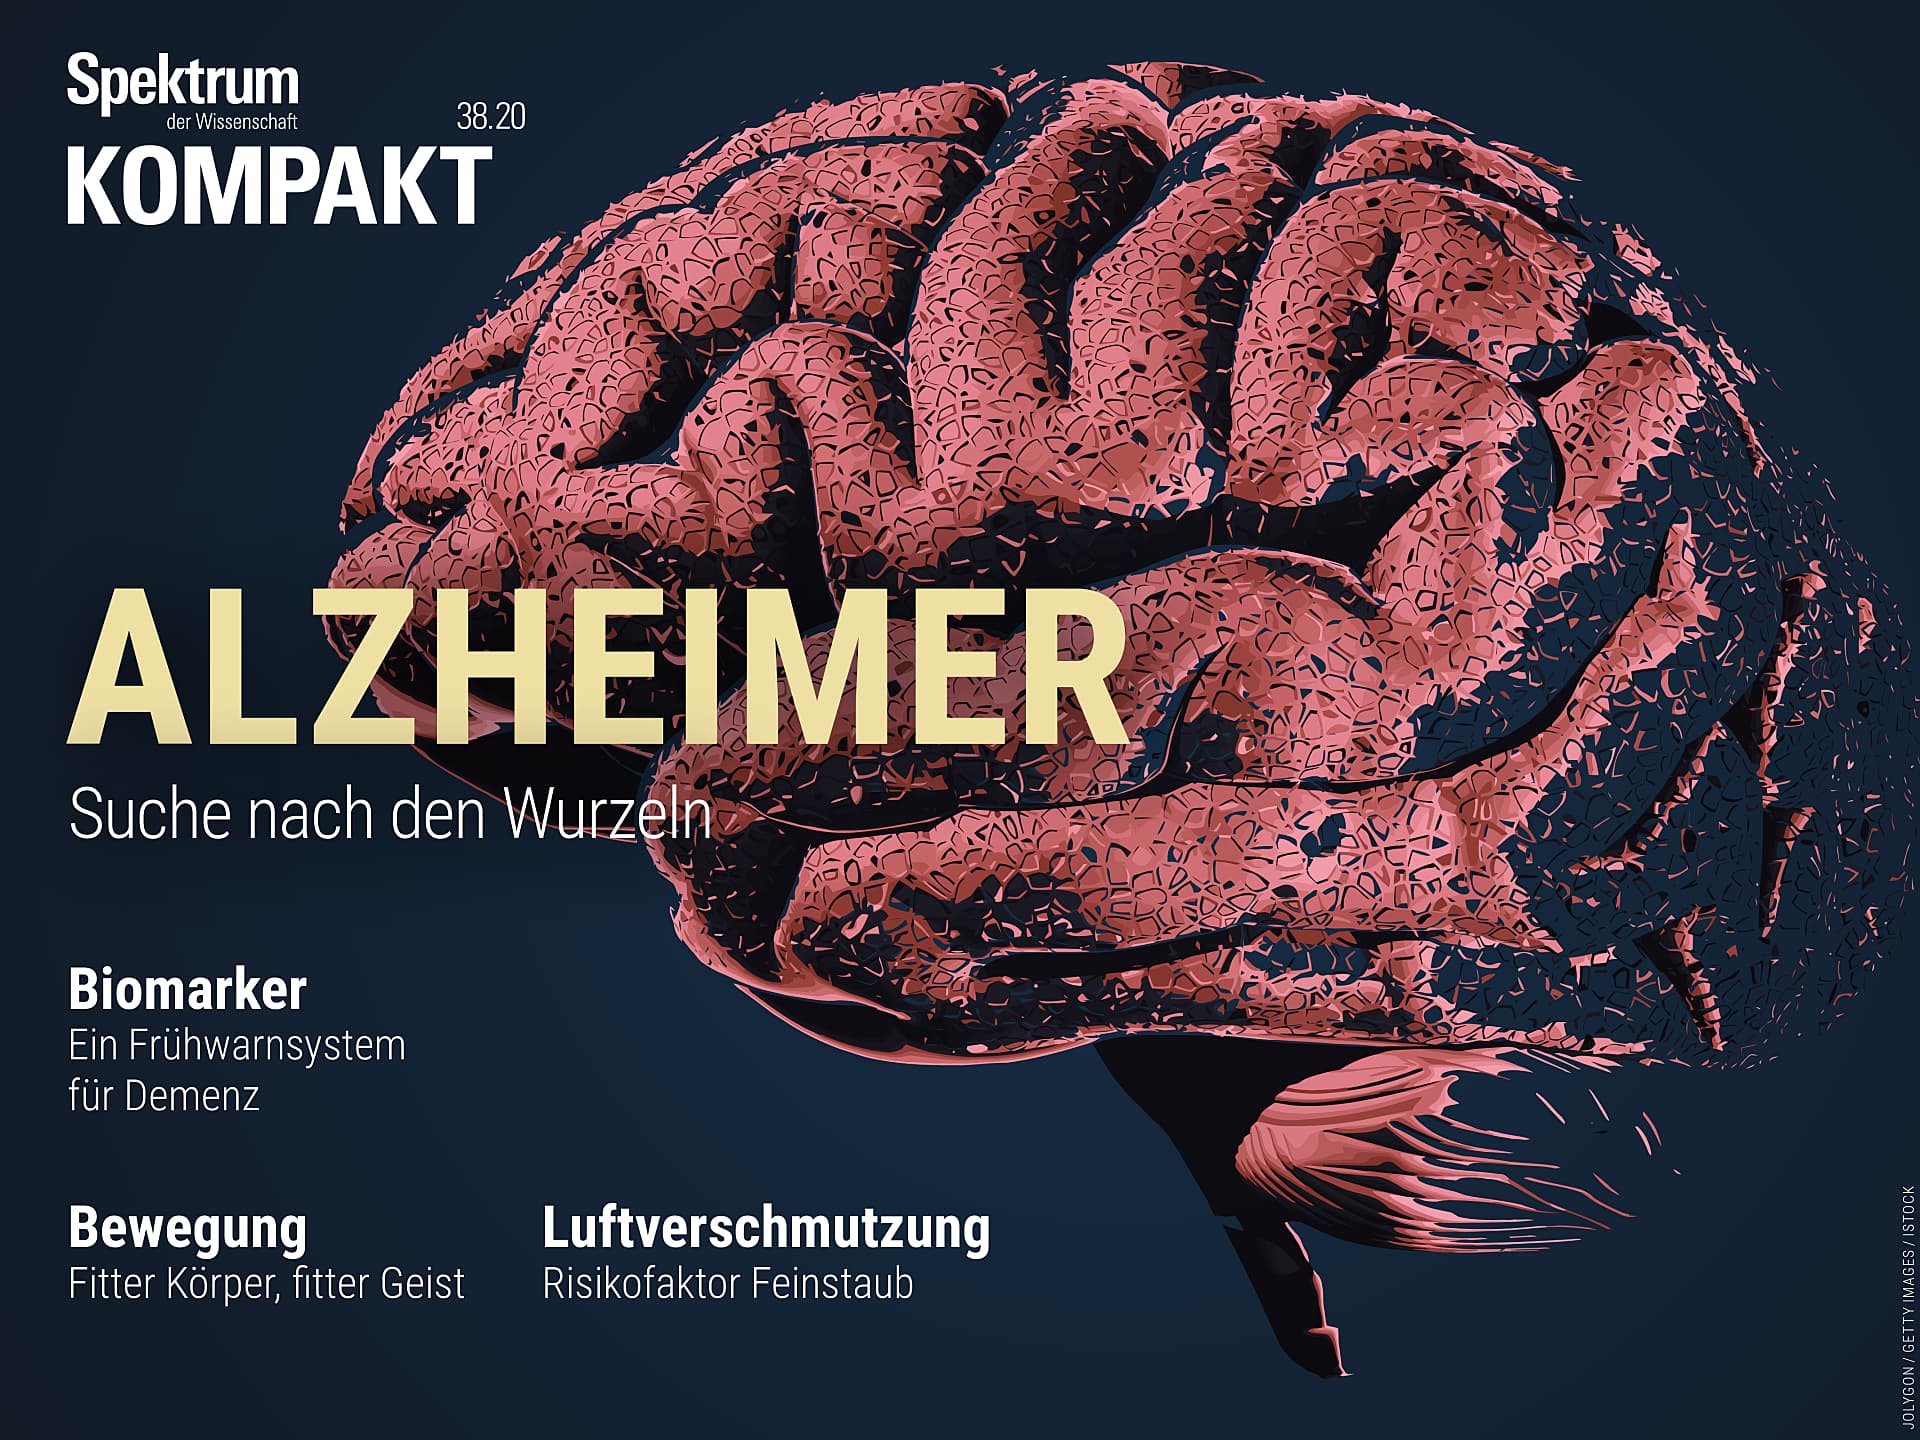 Alzheimer - Suche nach den Wurzeln